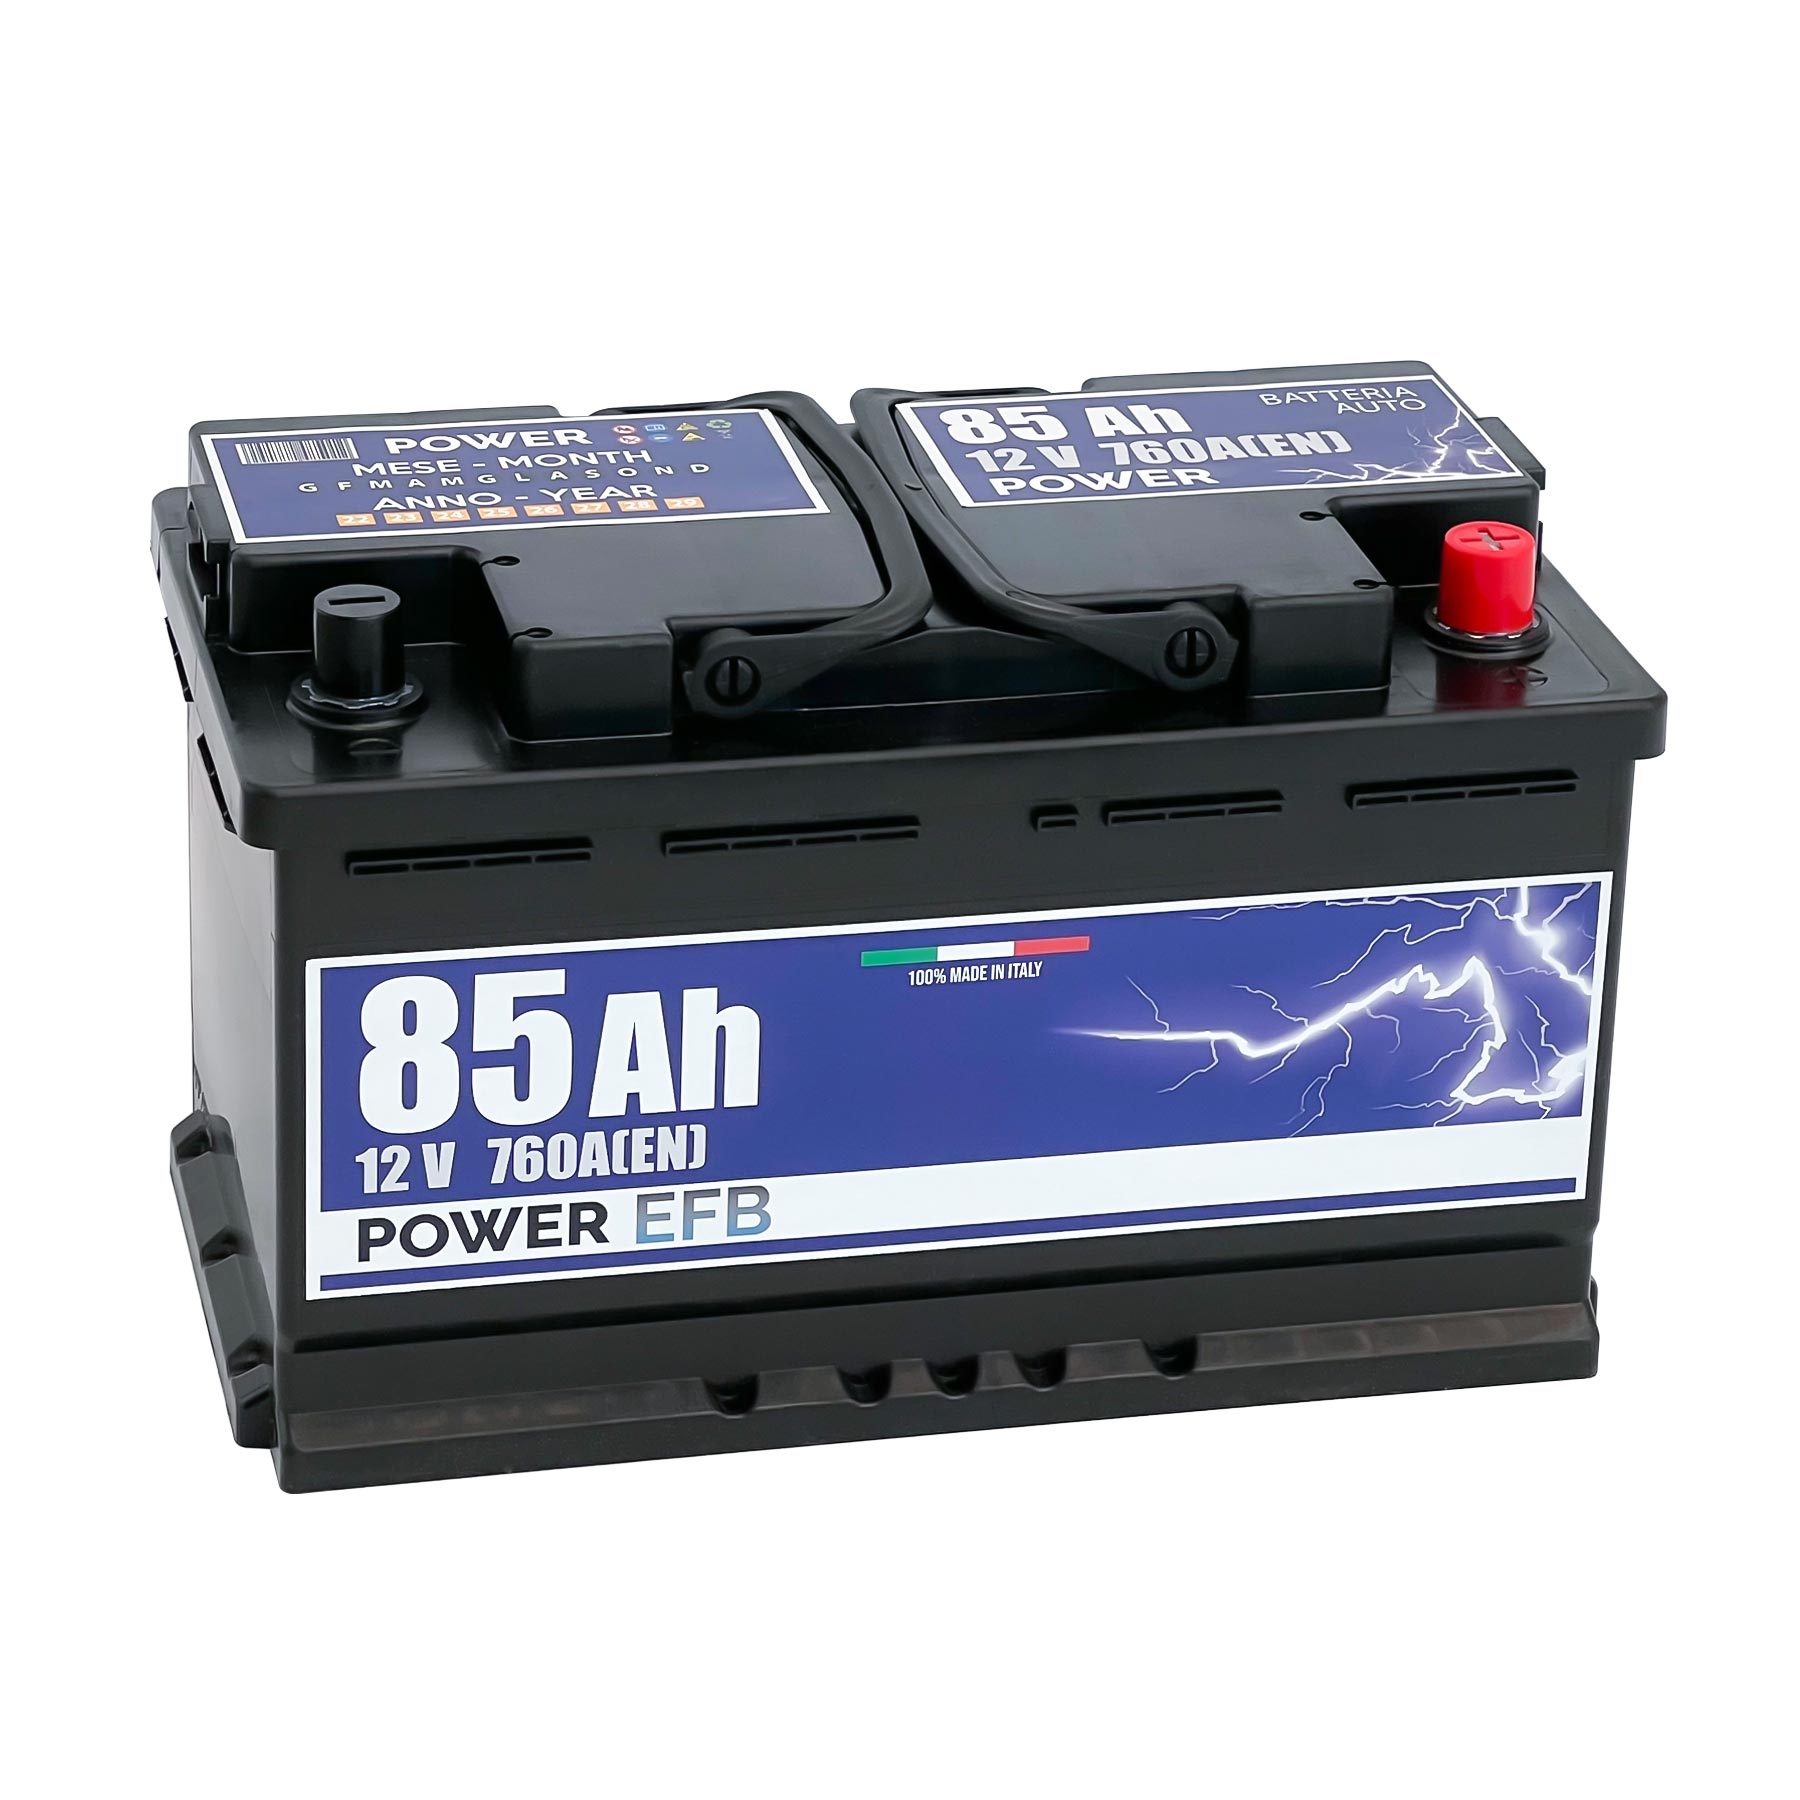 Batteria originale Power EFB PL850, dimensioni 315 x 175 x 190, polo positivo a destra, 12 volt, 85 amperora, 760 ampere, EFB. Batteria per auto e veicoli leggeri con start e stop.